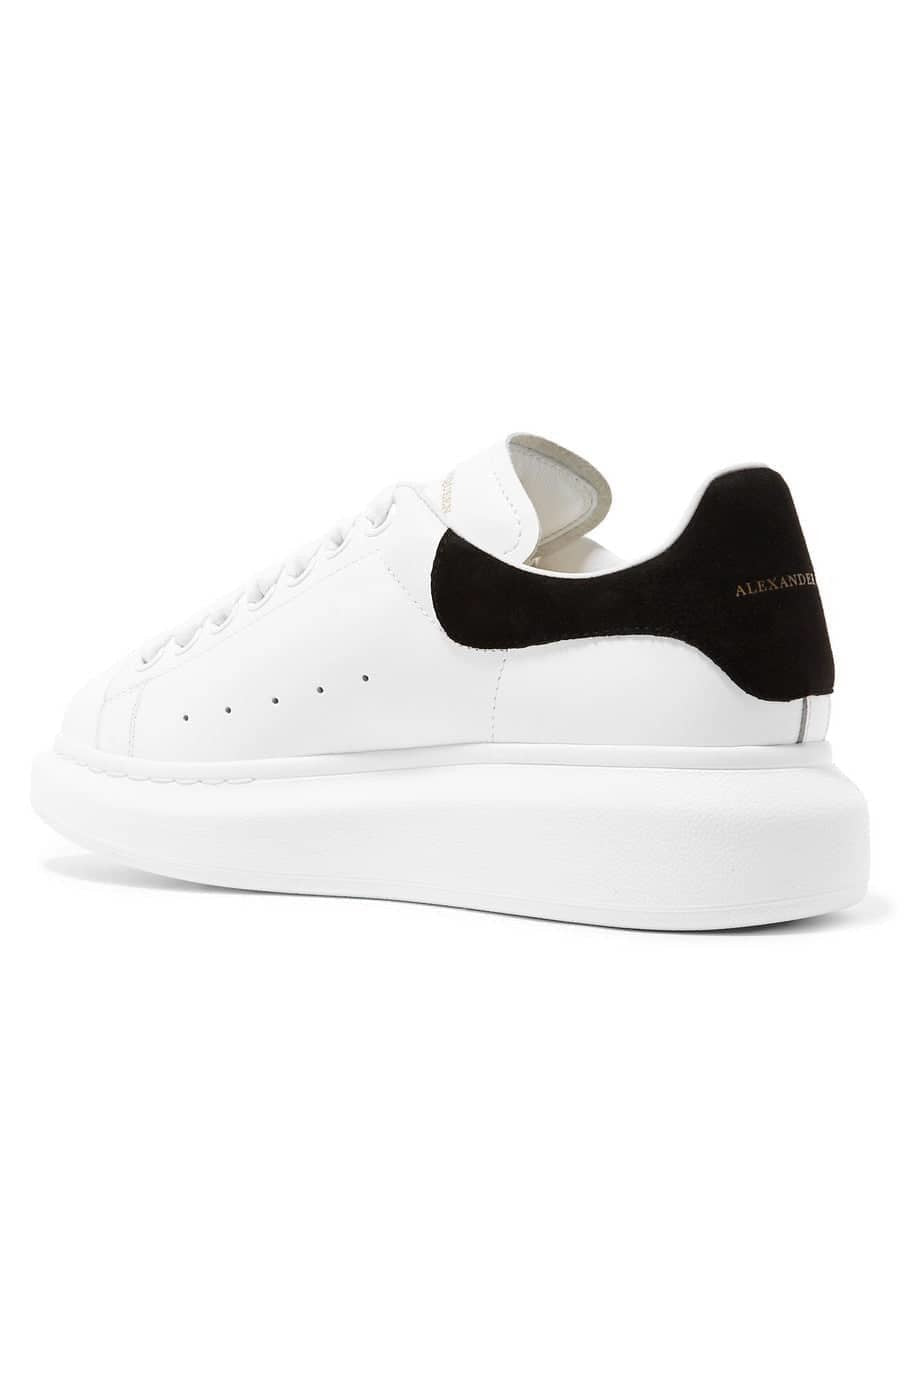 (SALE) ALEXANDER MCQUEEN Oversized low top suede sneaker white/black